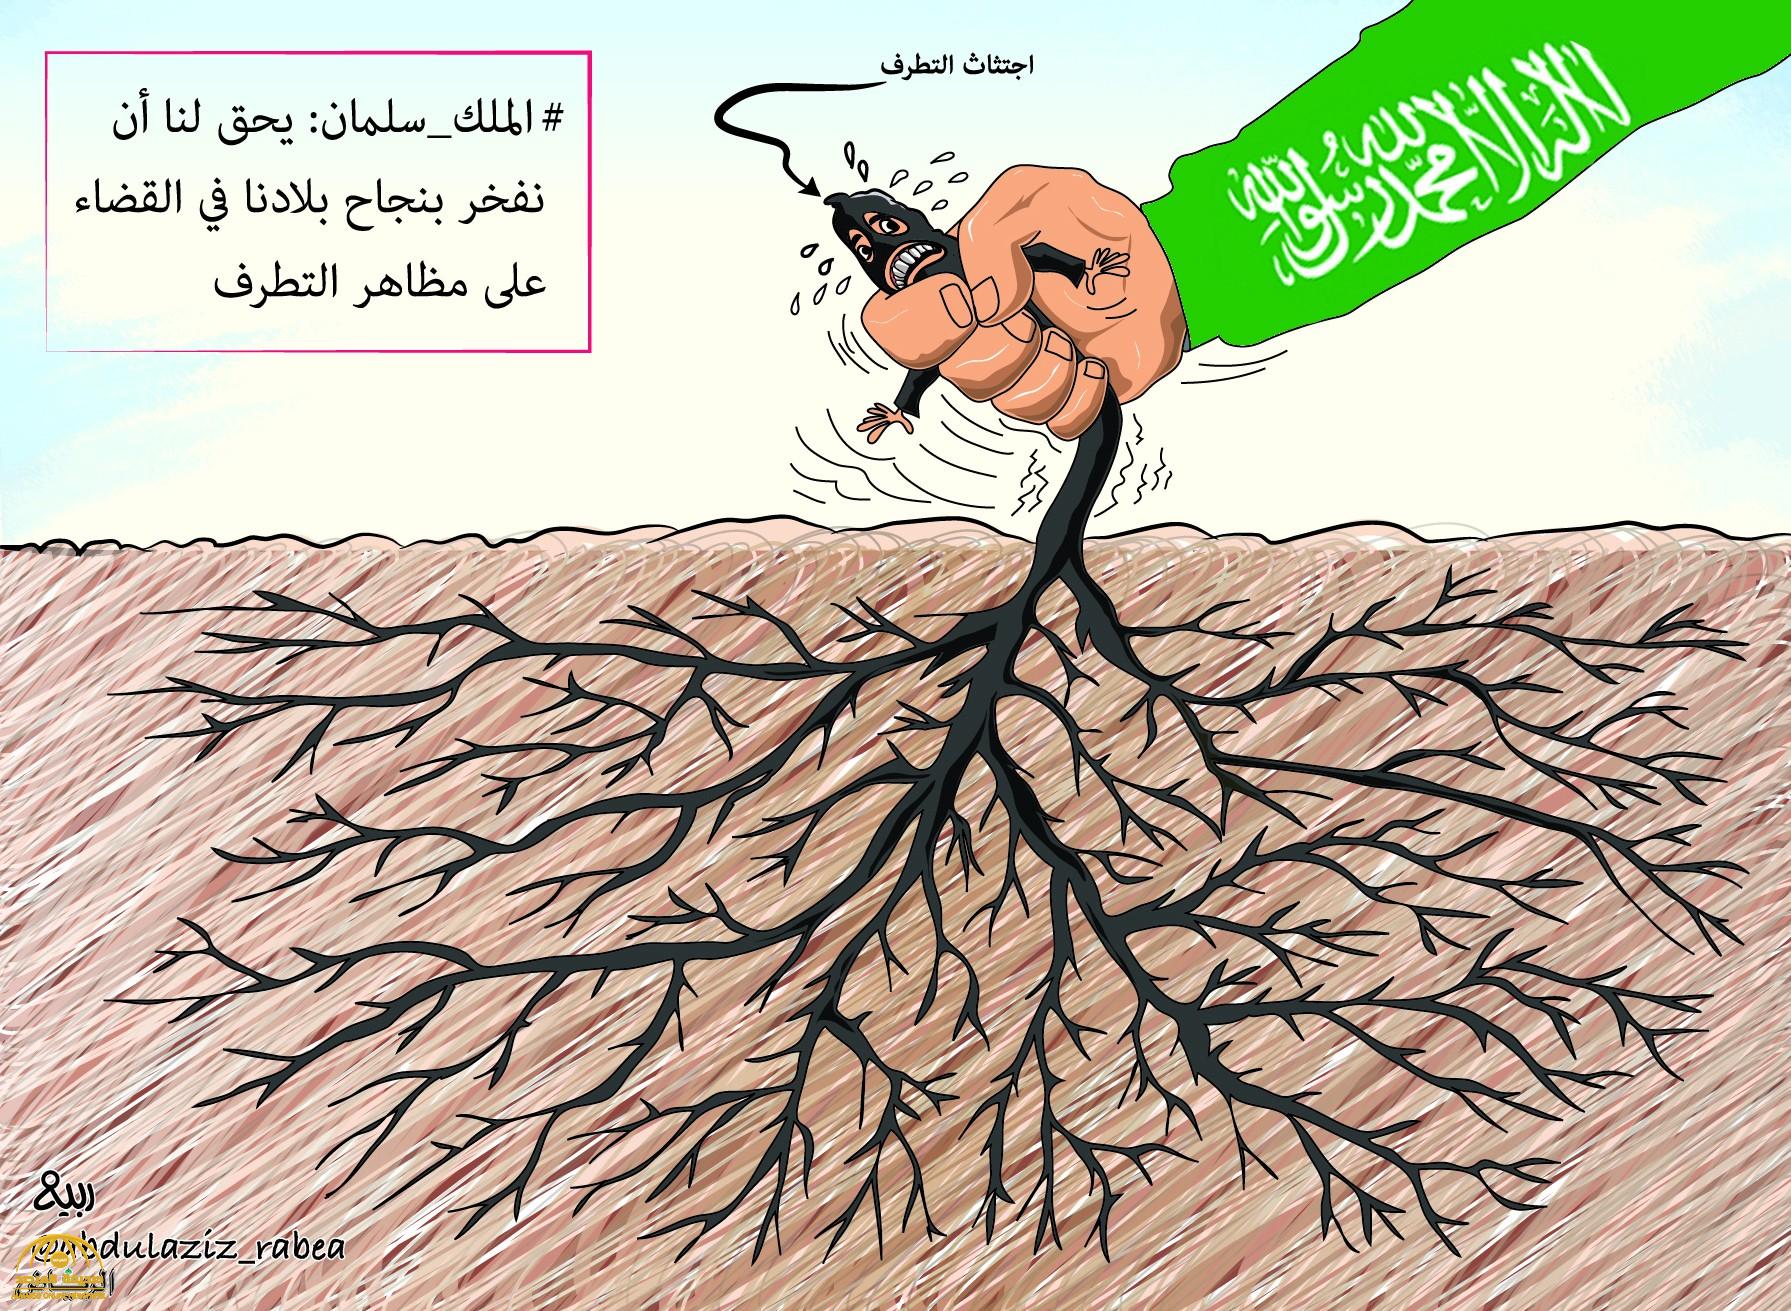 شاهد أبرز "كاريكاتير" الصحف اليوم الجمعة